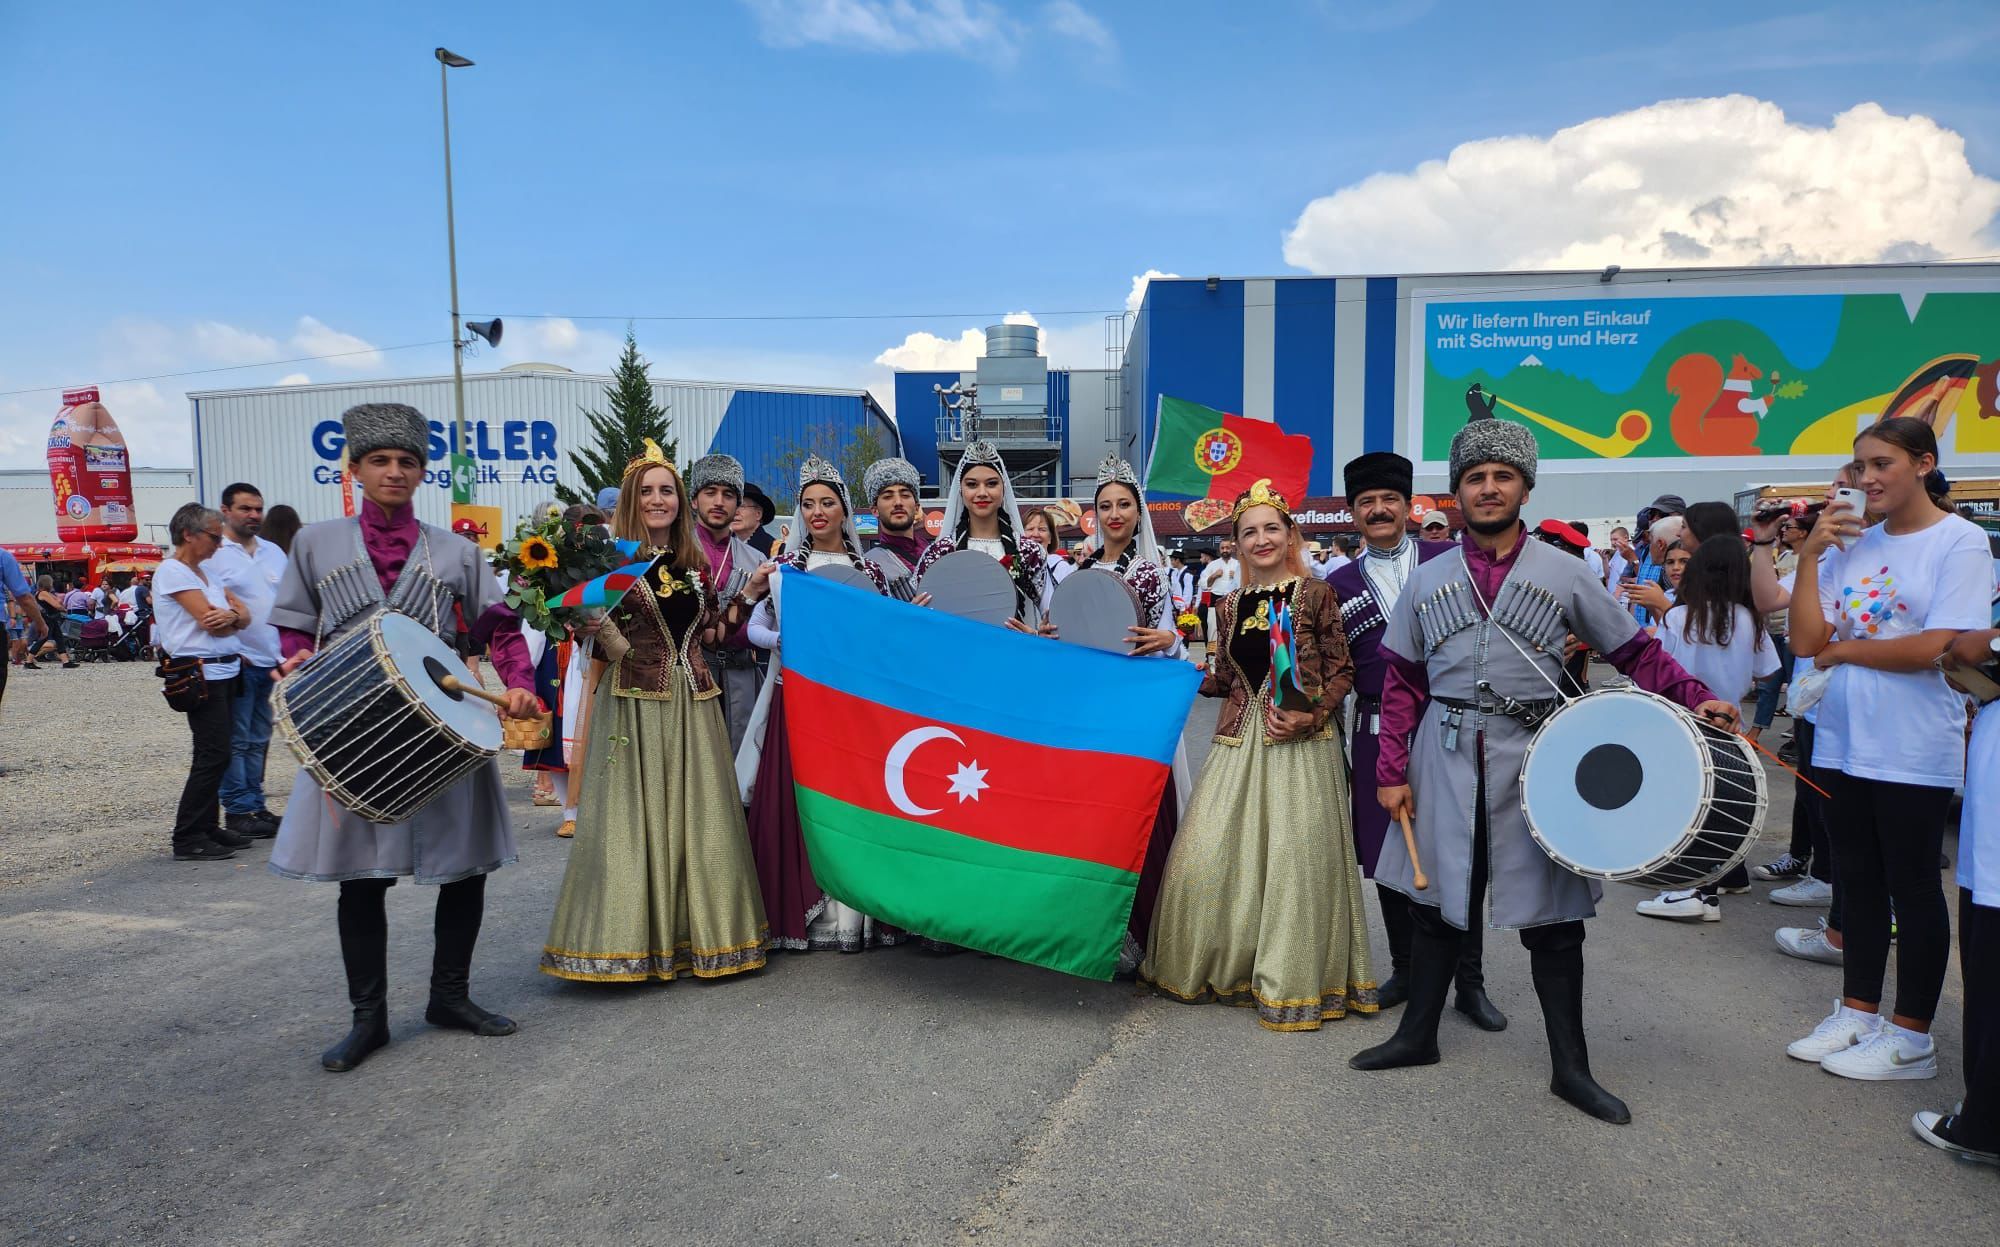 Объединение “Друзья Азербайджана” признано главным событием фестиваля в Швейцарии 